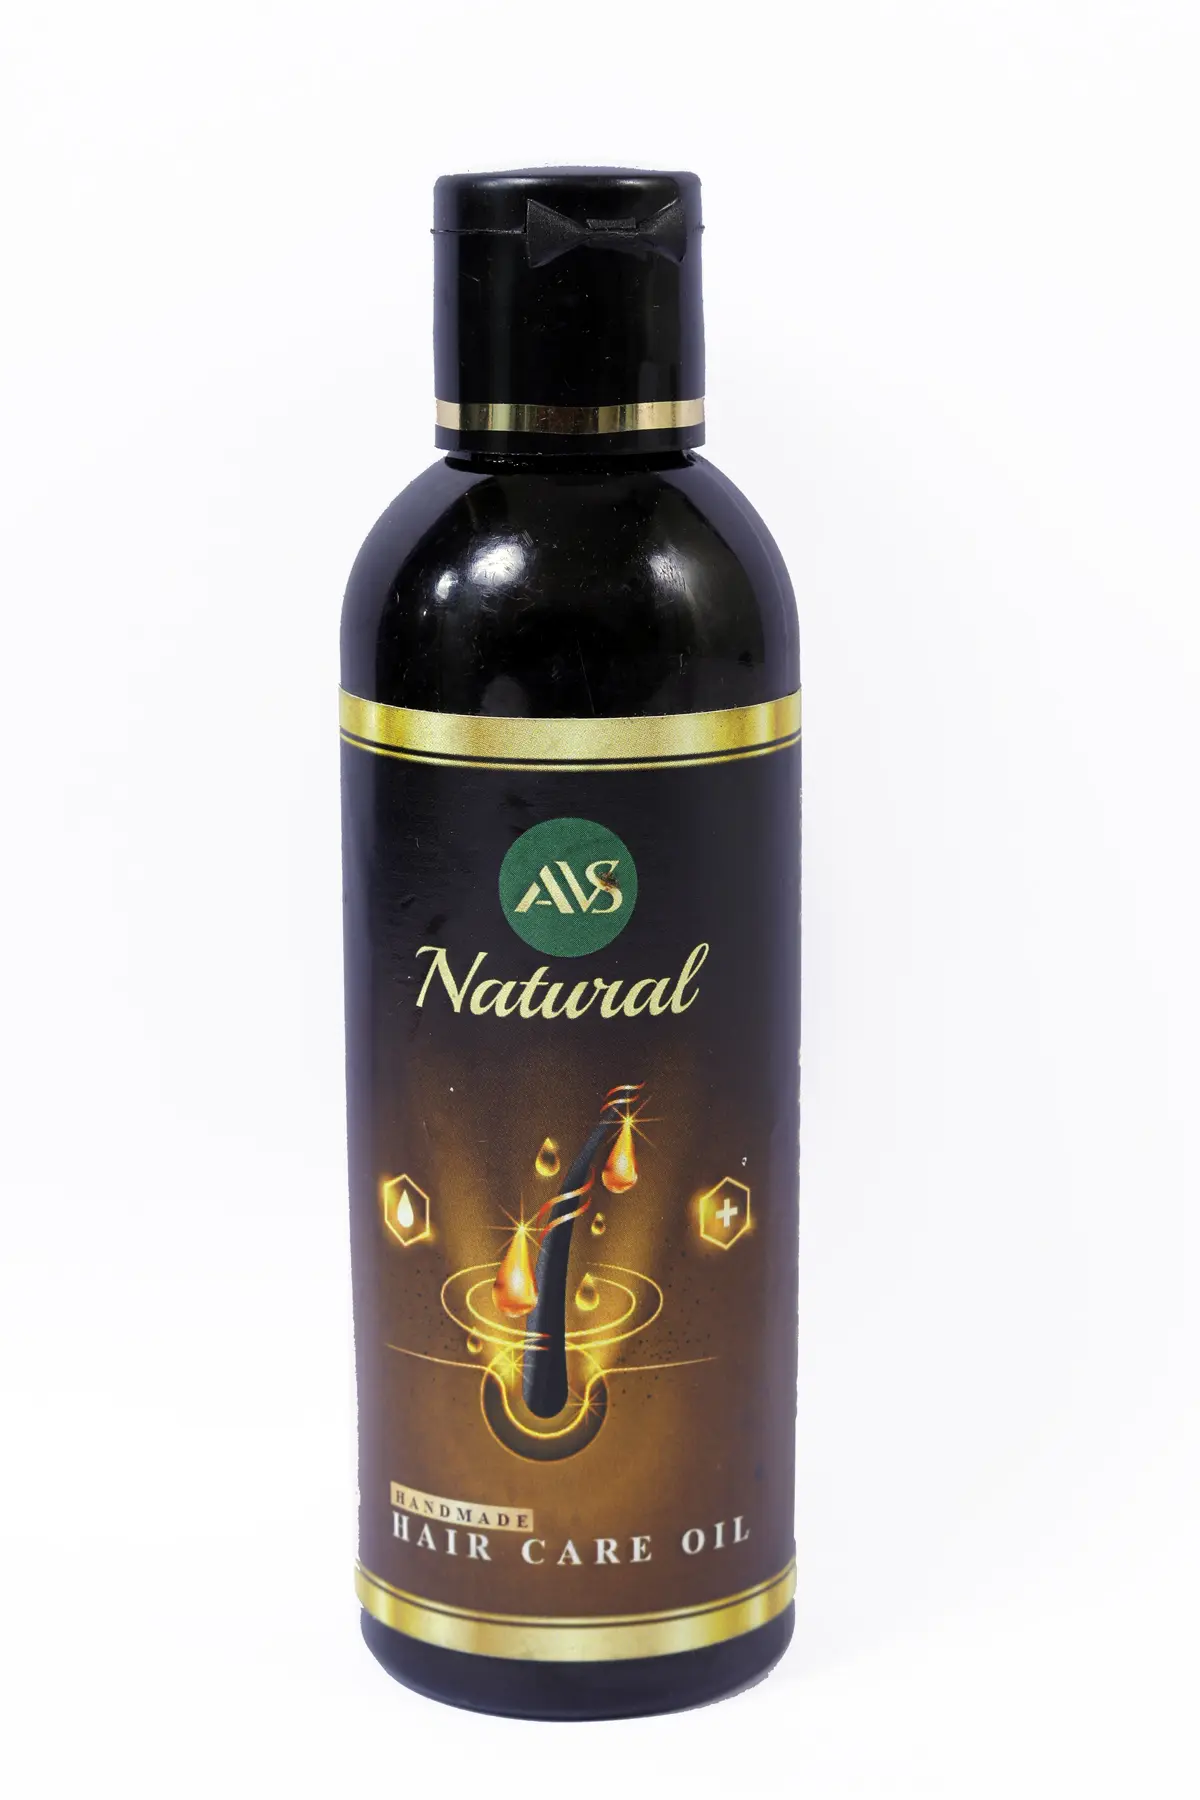 AVS Natural Homemade Hair care Oil